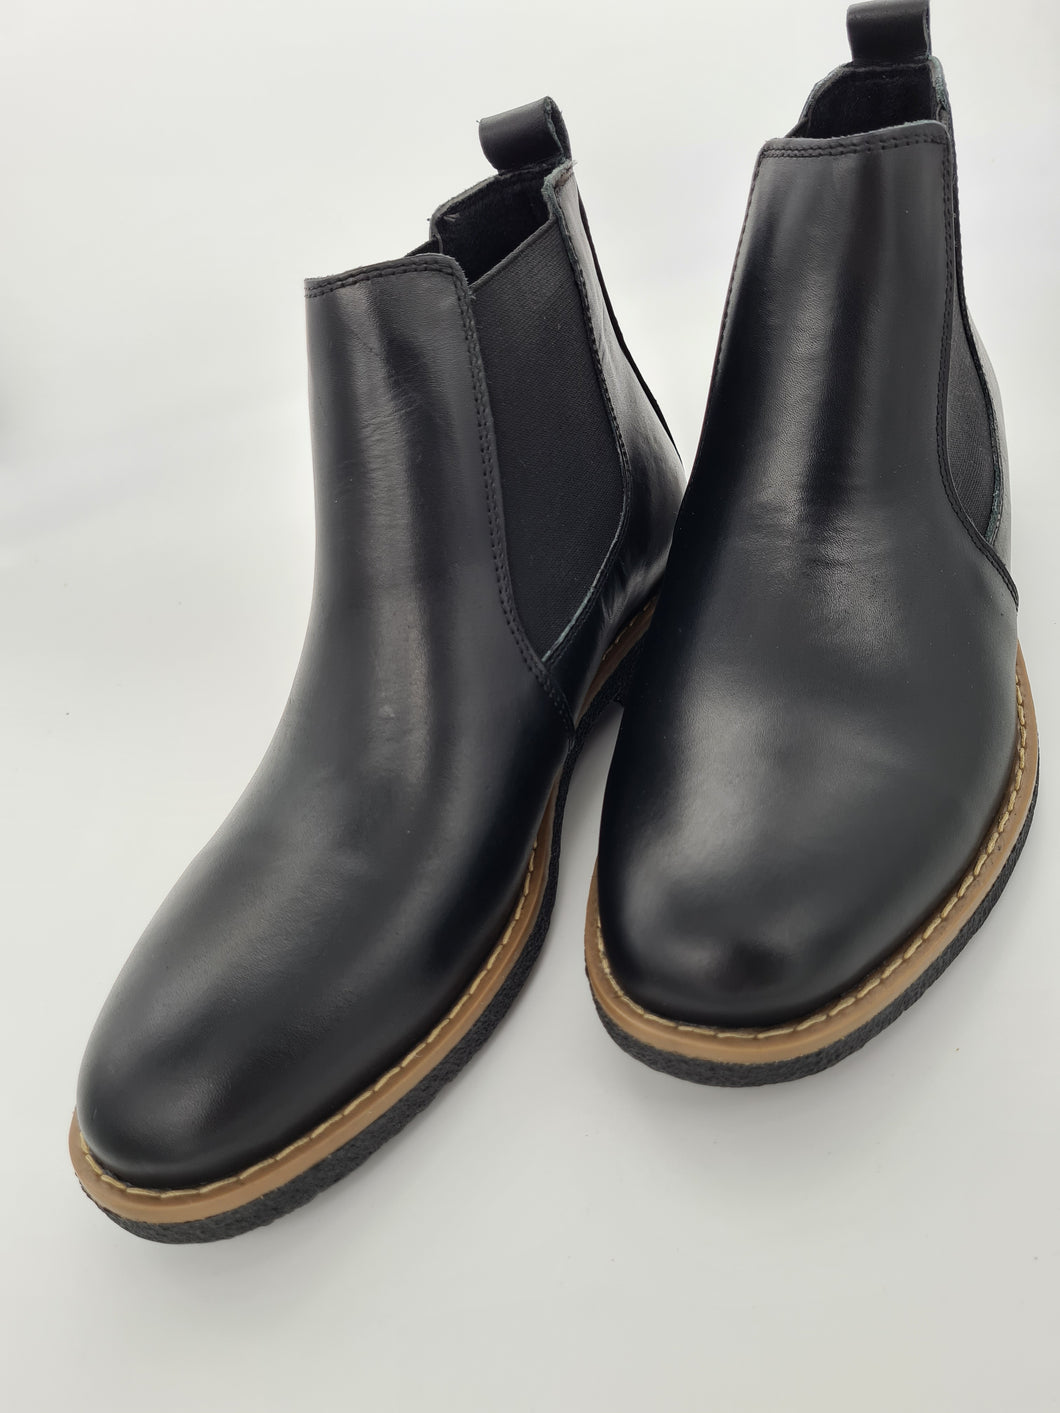 Damen Leder Chalsea Boots Stiefel Stiefeletten in Schwarz Größe 36-42